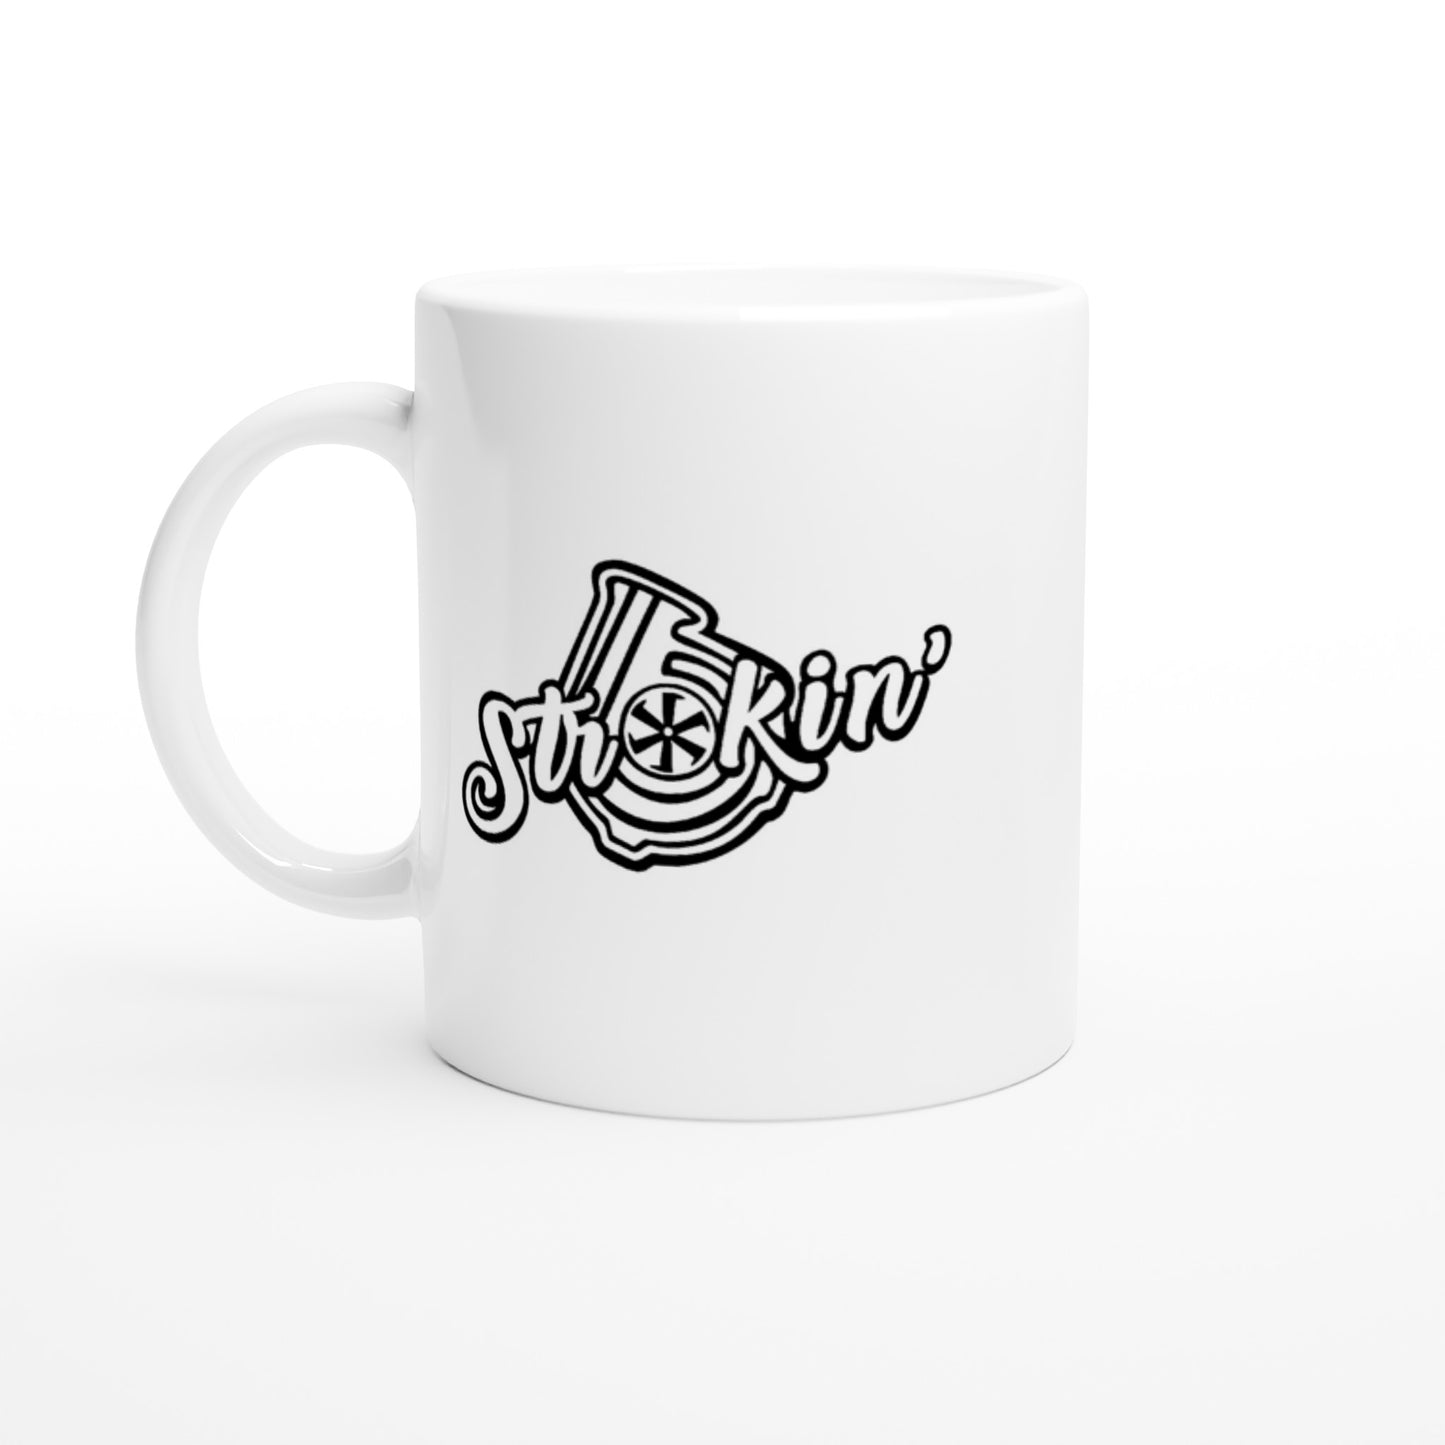 Strokin' - White 11oz Ceramic Mug - Mister Snarky's